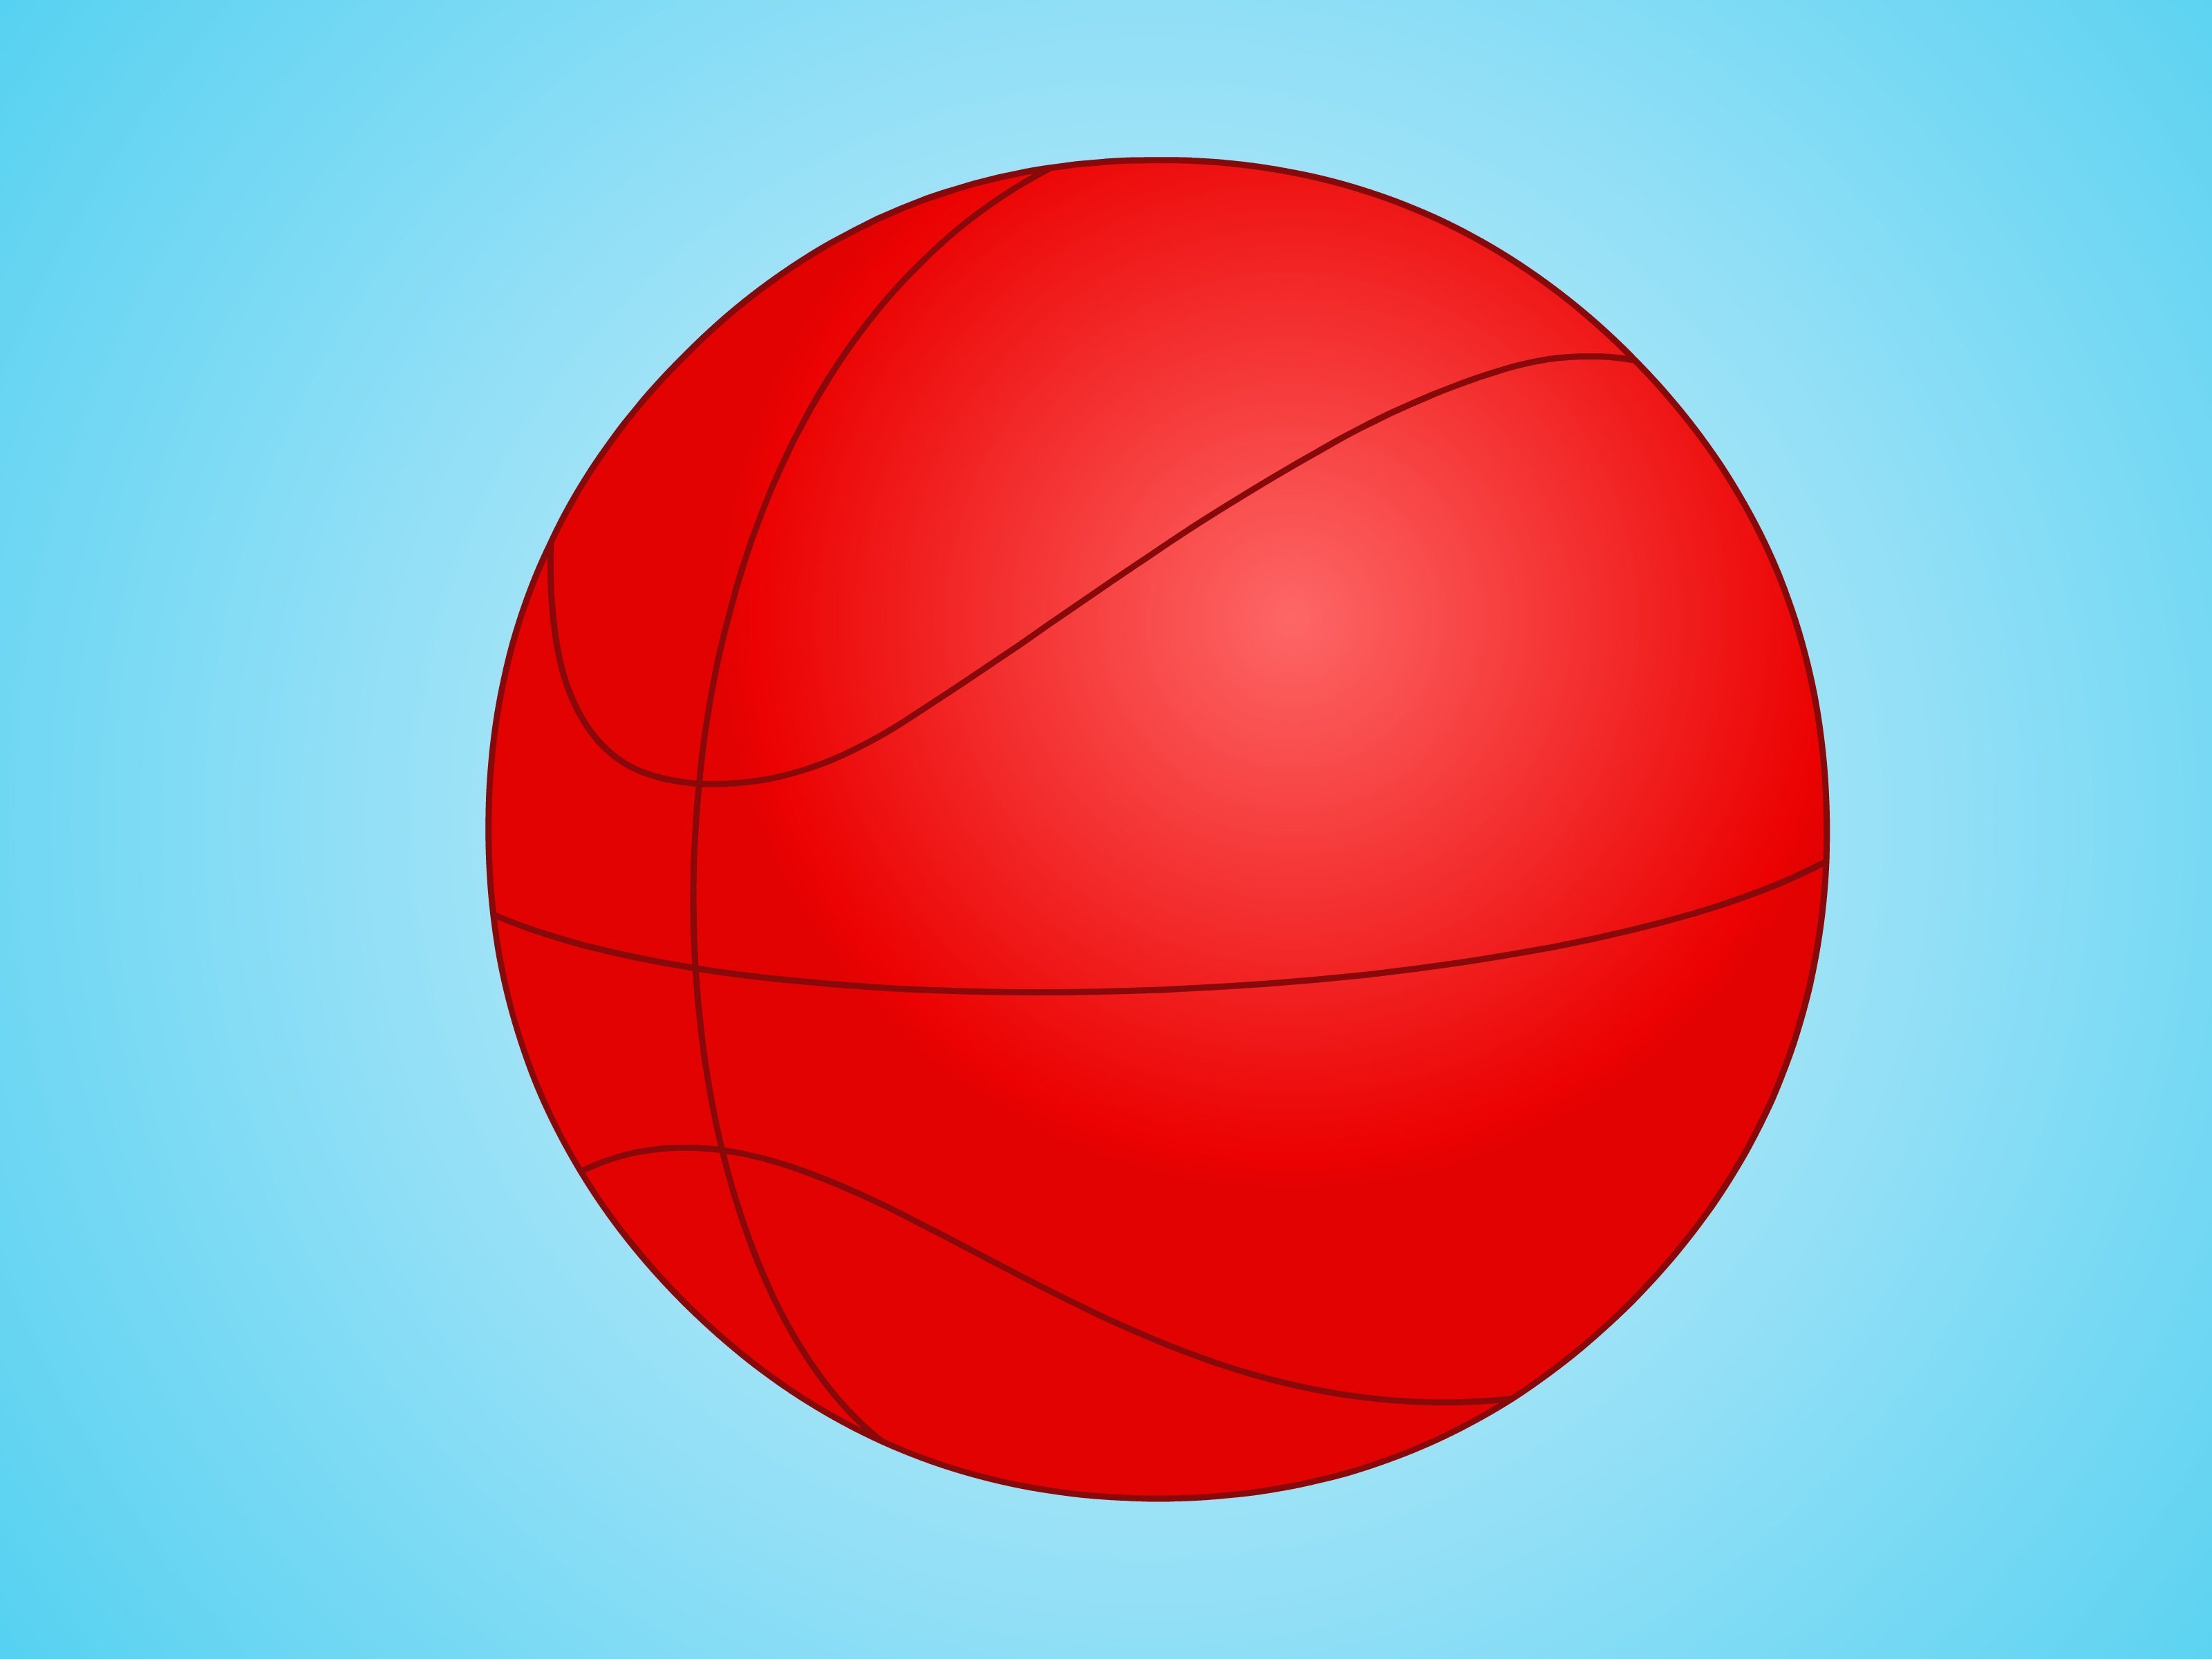 Мяча в центре круга